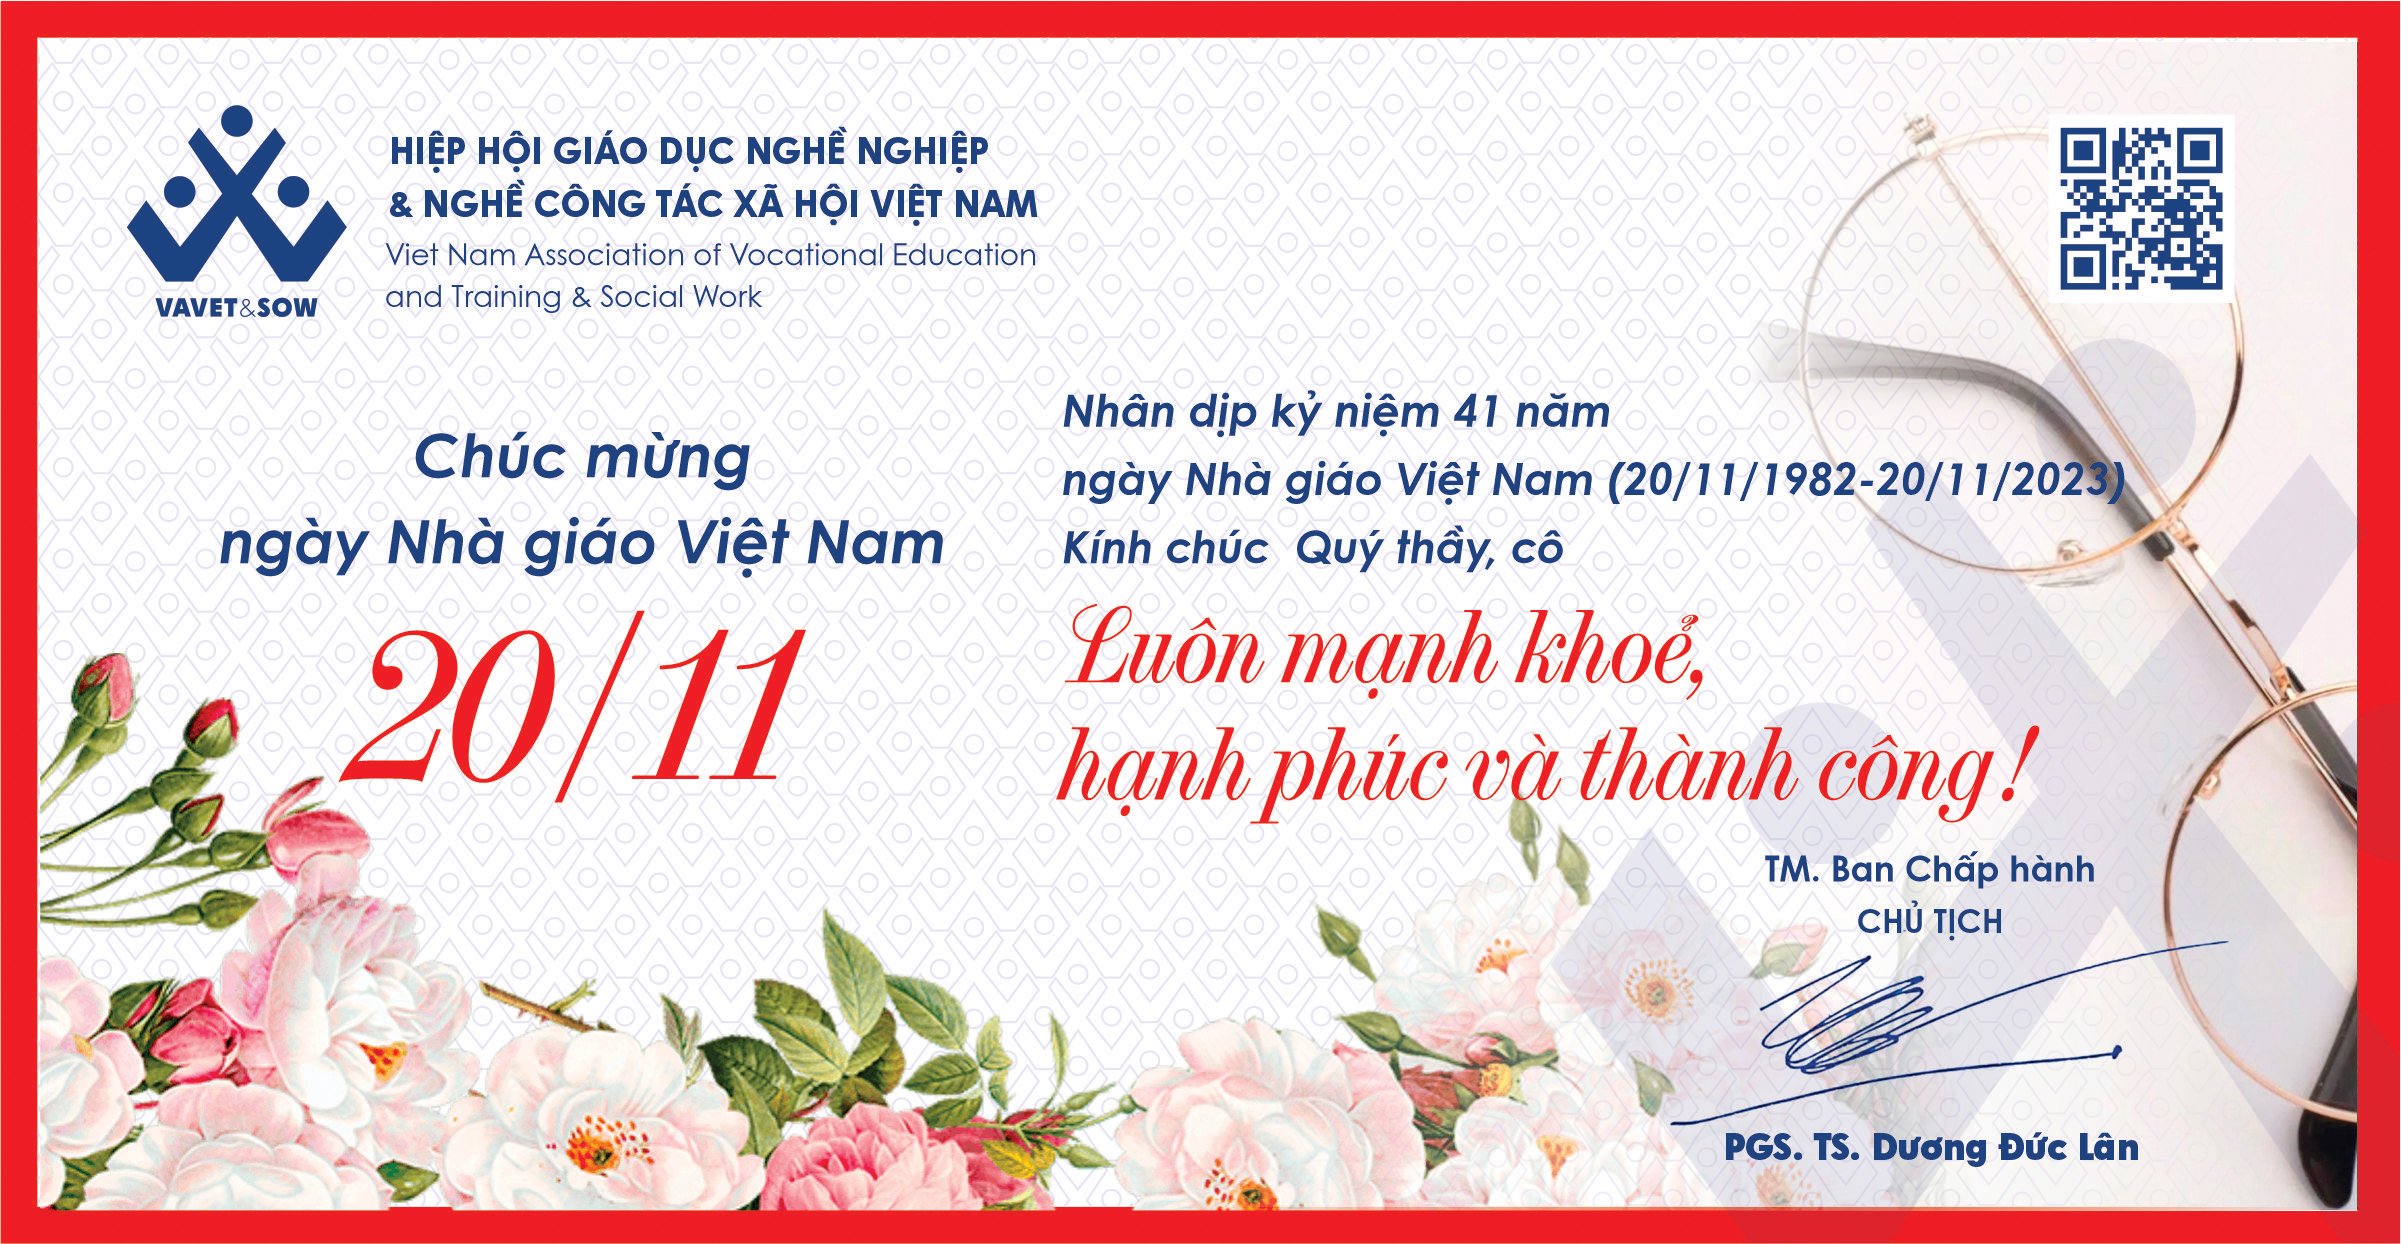 Chúc mừng ngày Nhà giáo Việt Nam